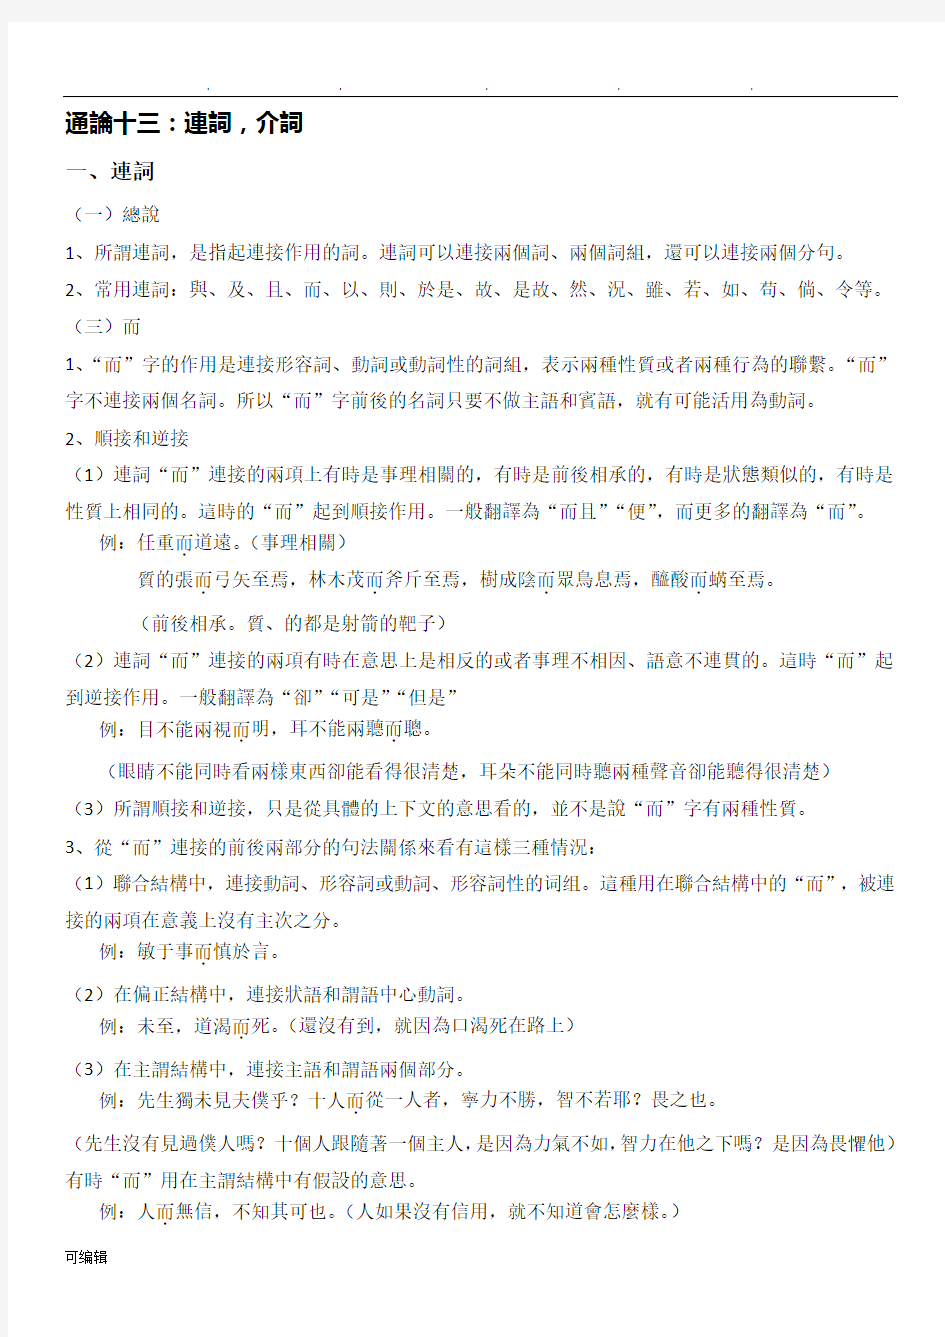 王力古代汉语第二册通论讲义全